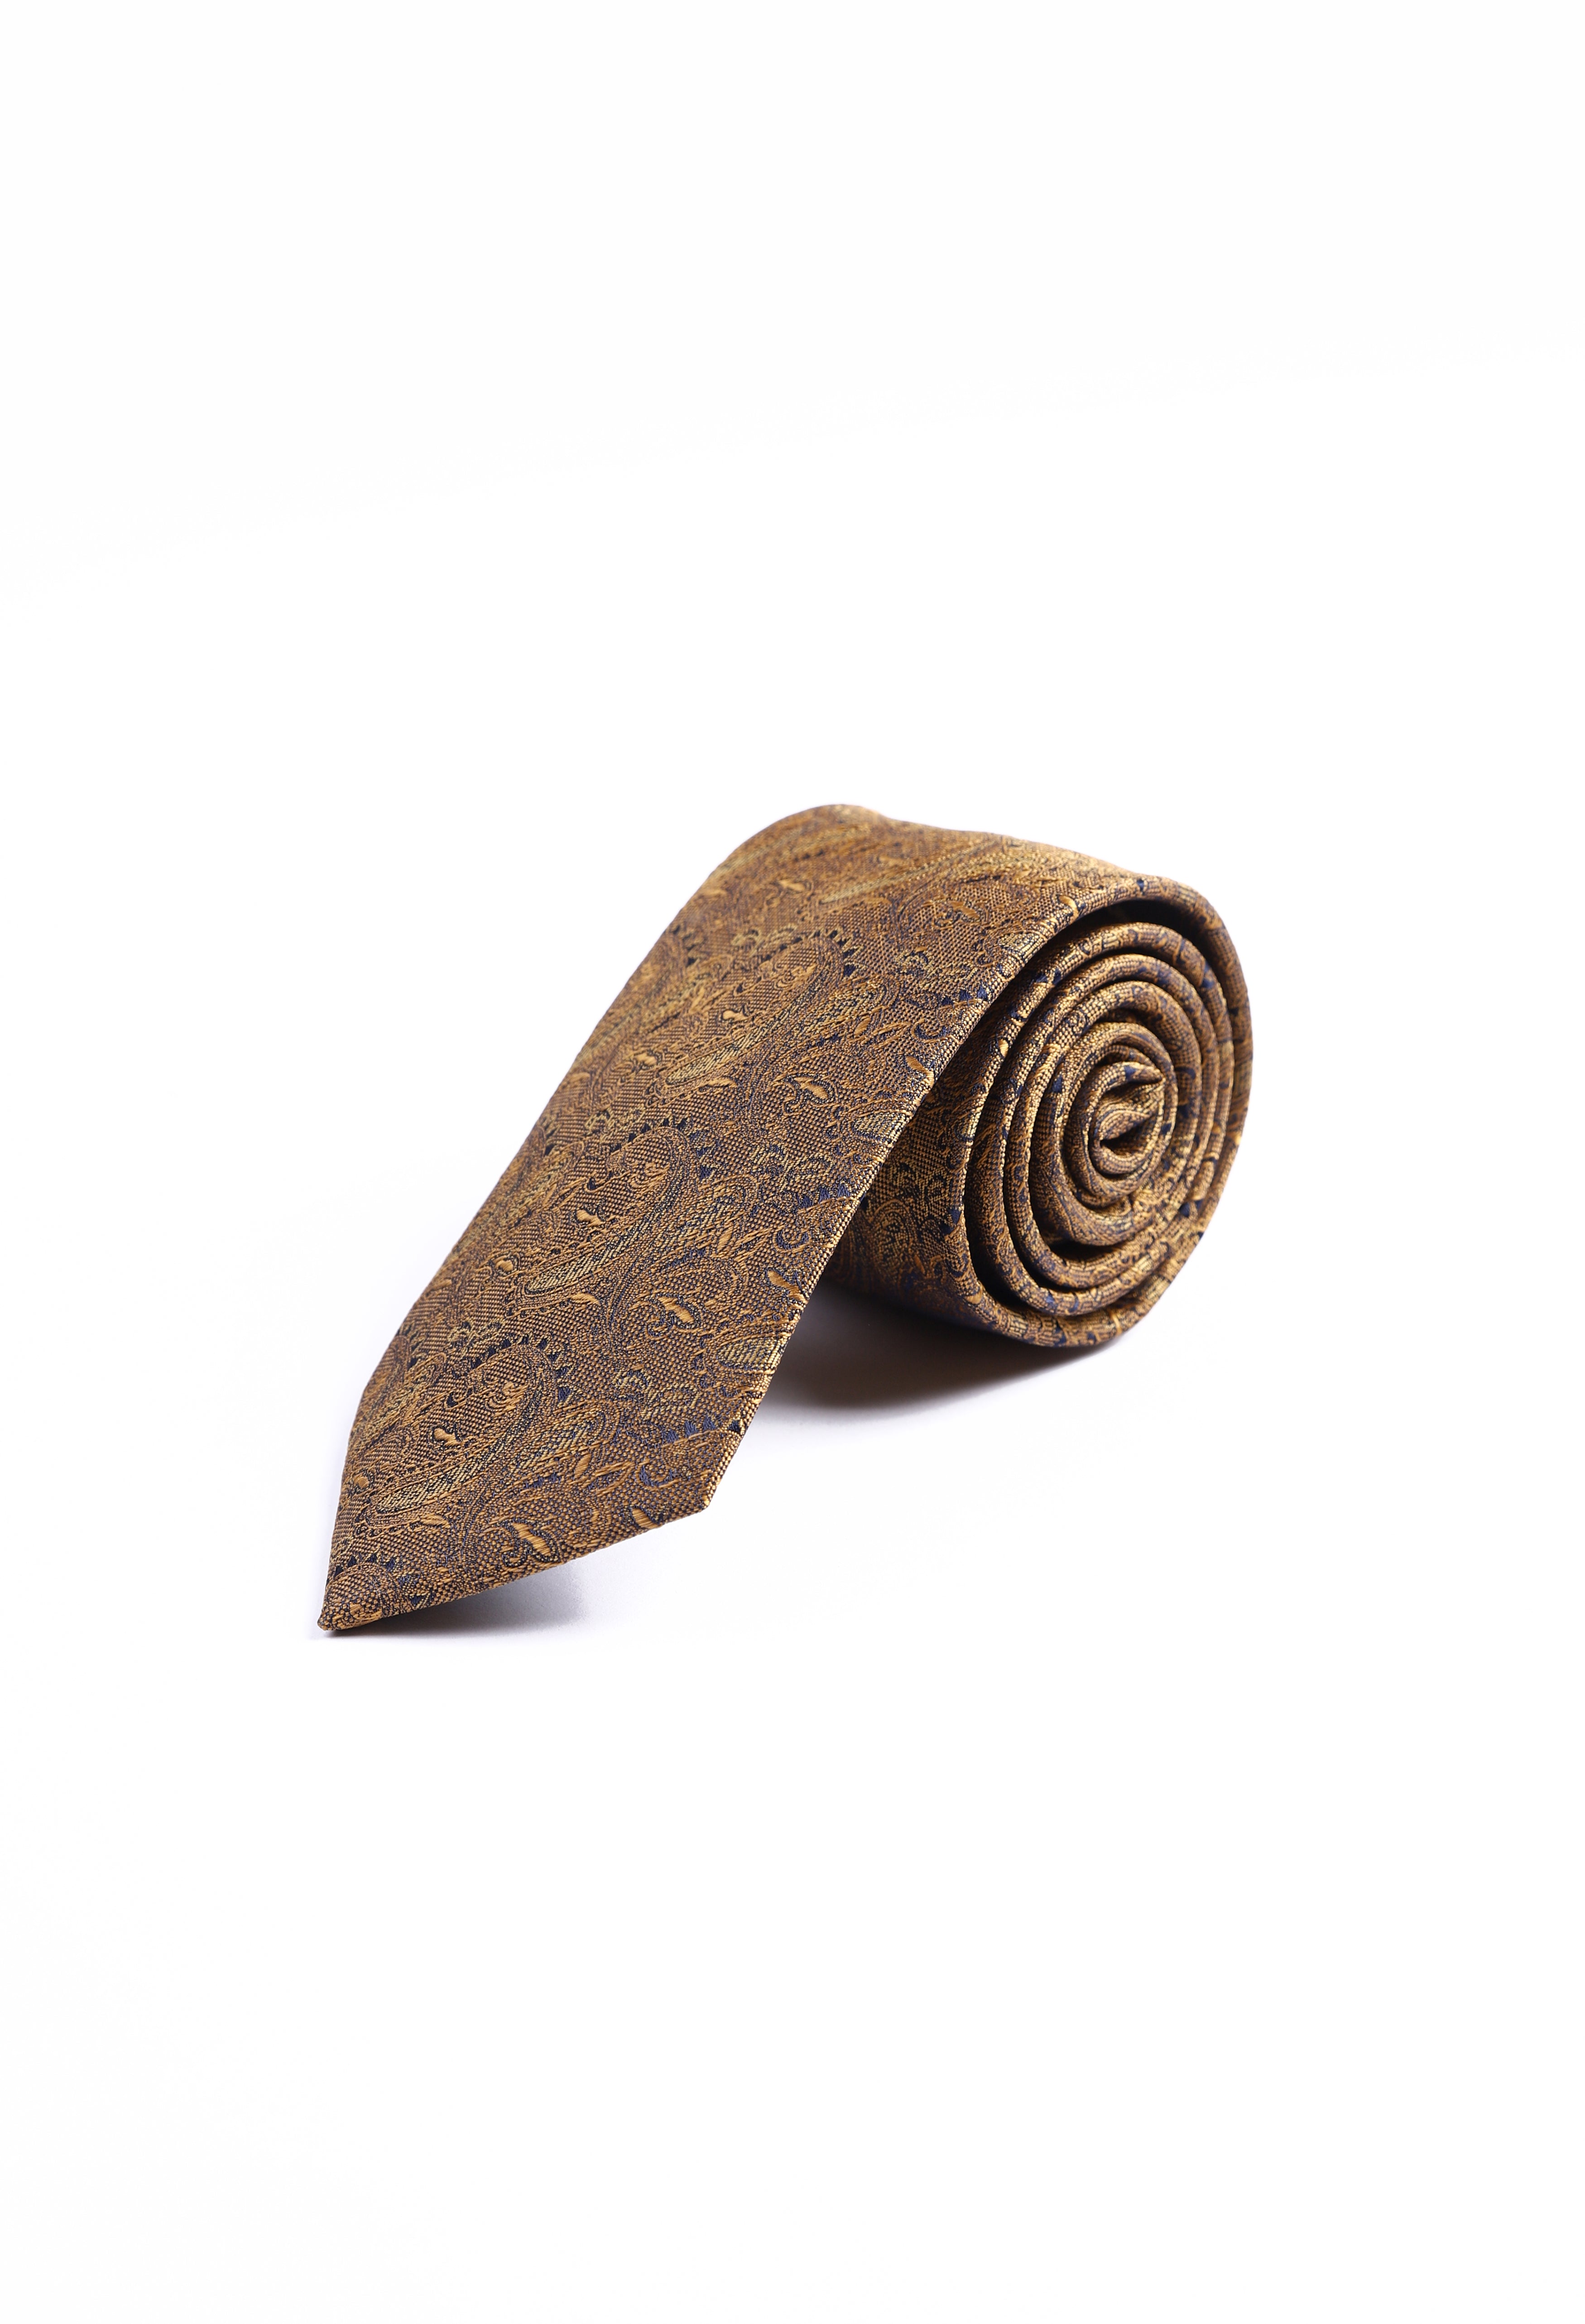 Goldenrod Paisley Tie (TIE-000023)